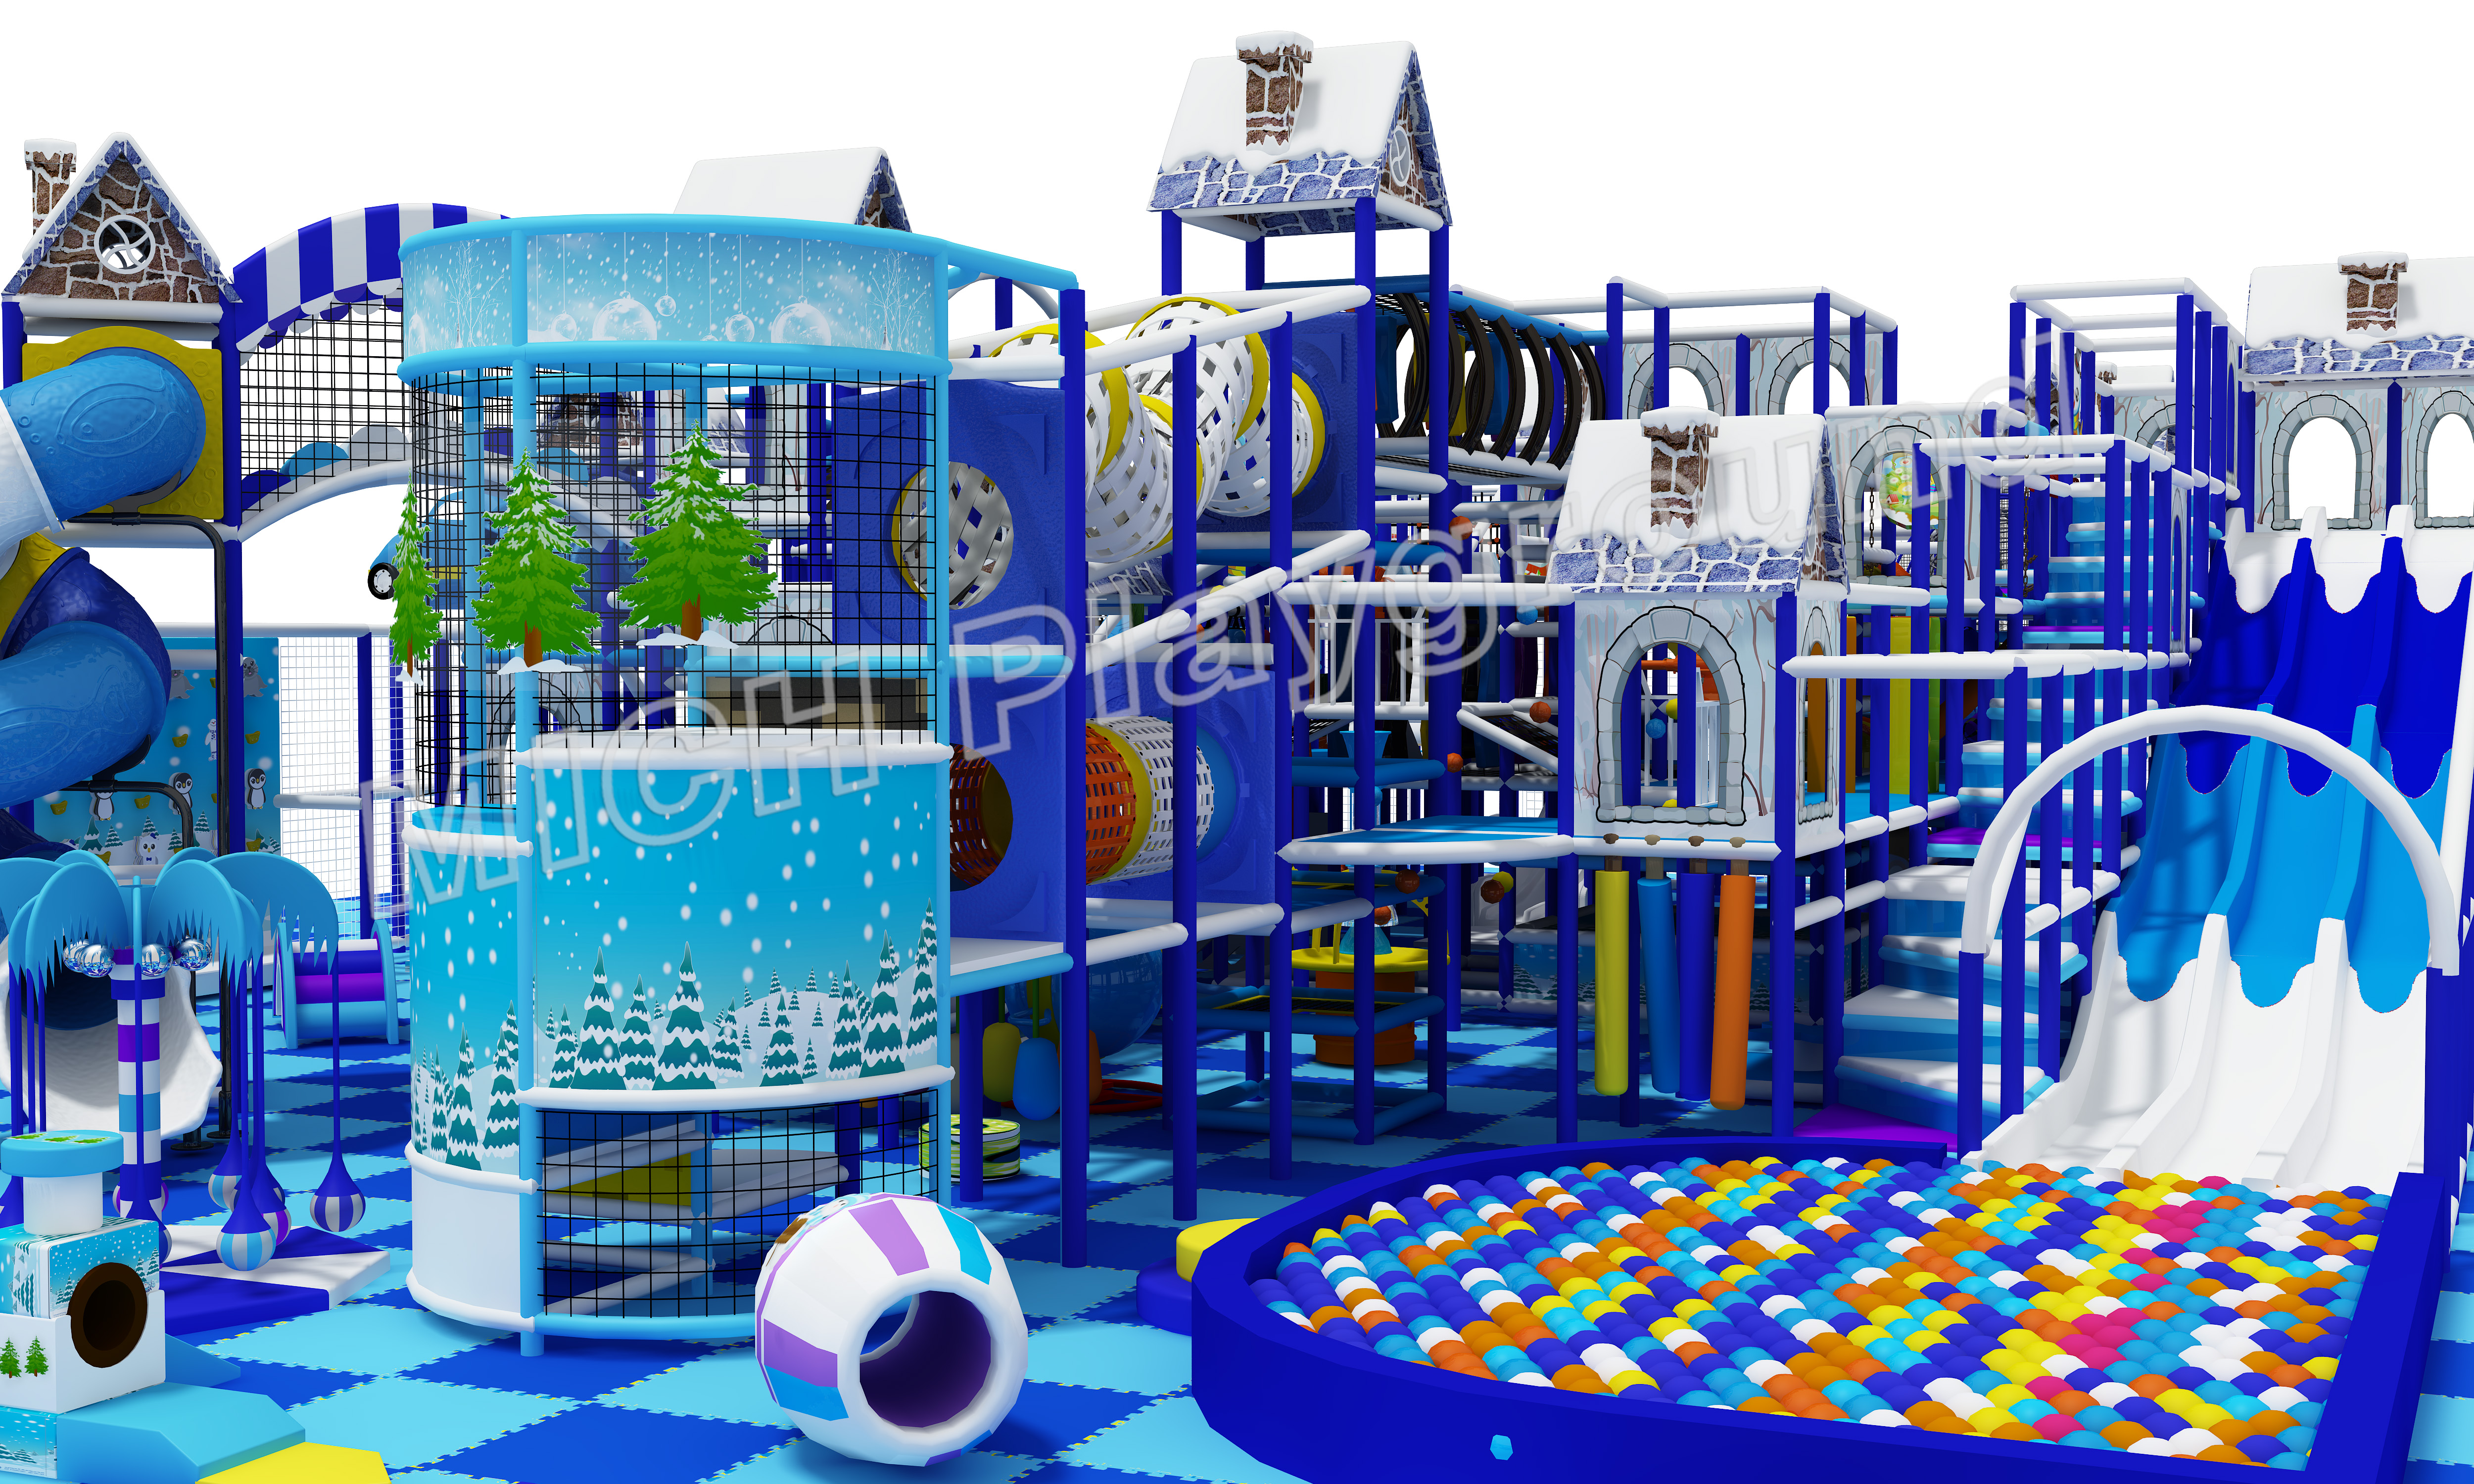 MICH Indoor Soft Playground Design для развлечений 7015B